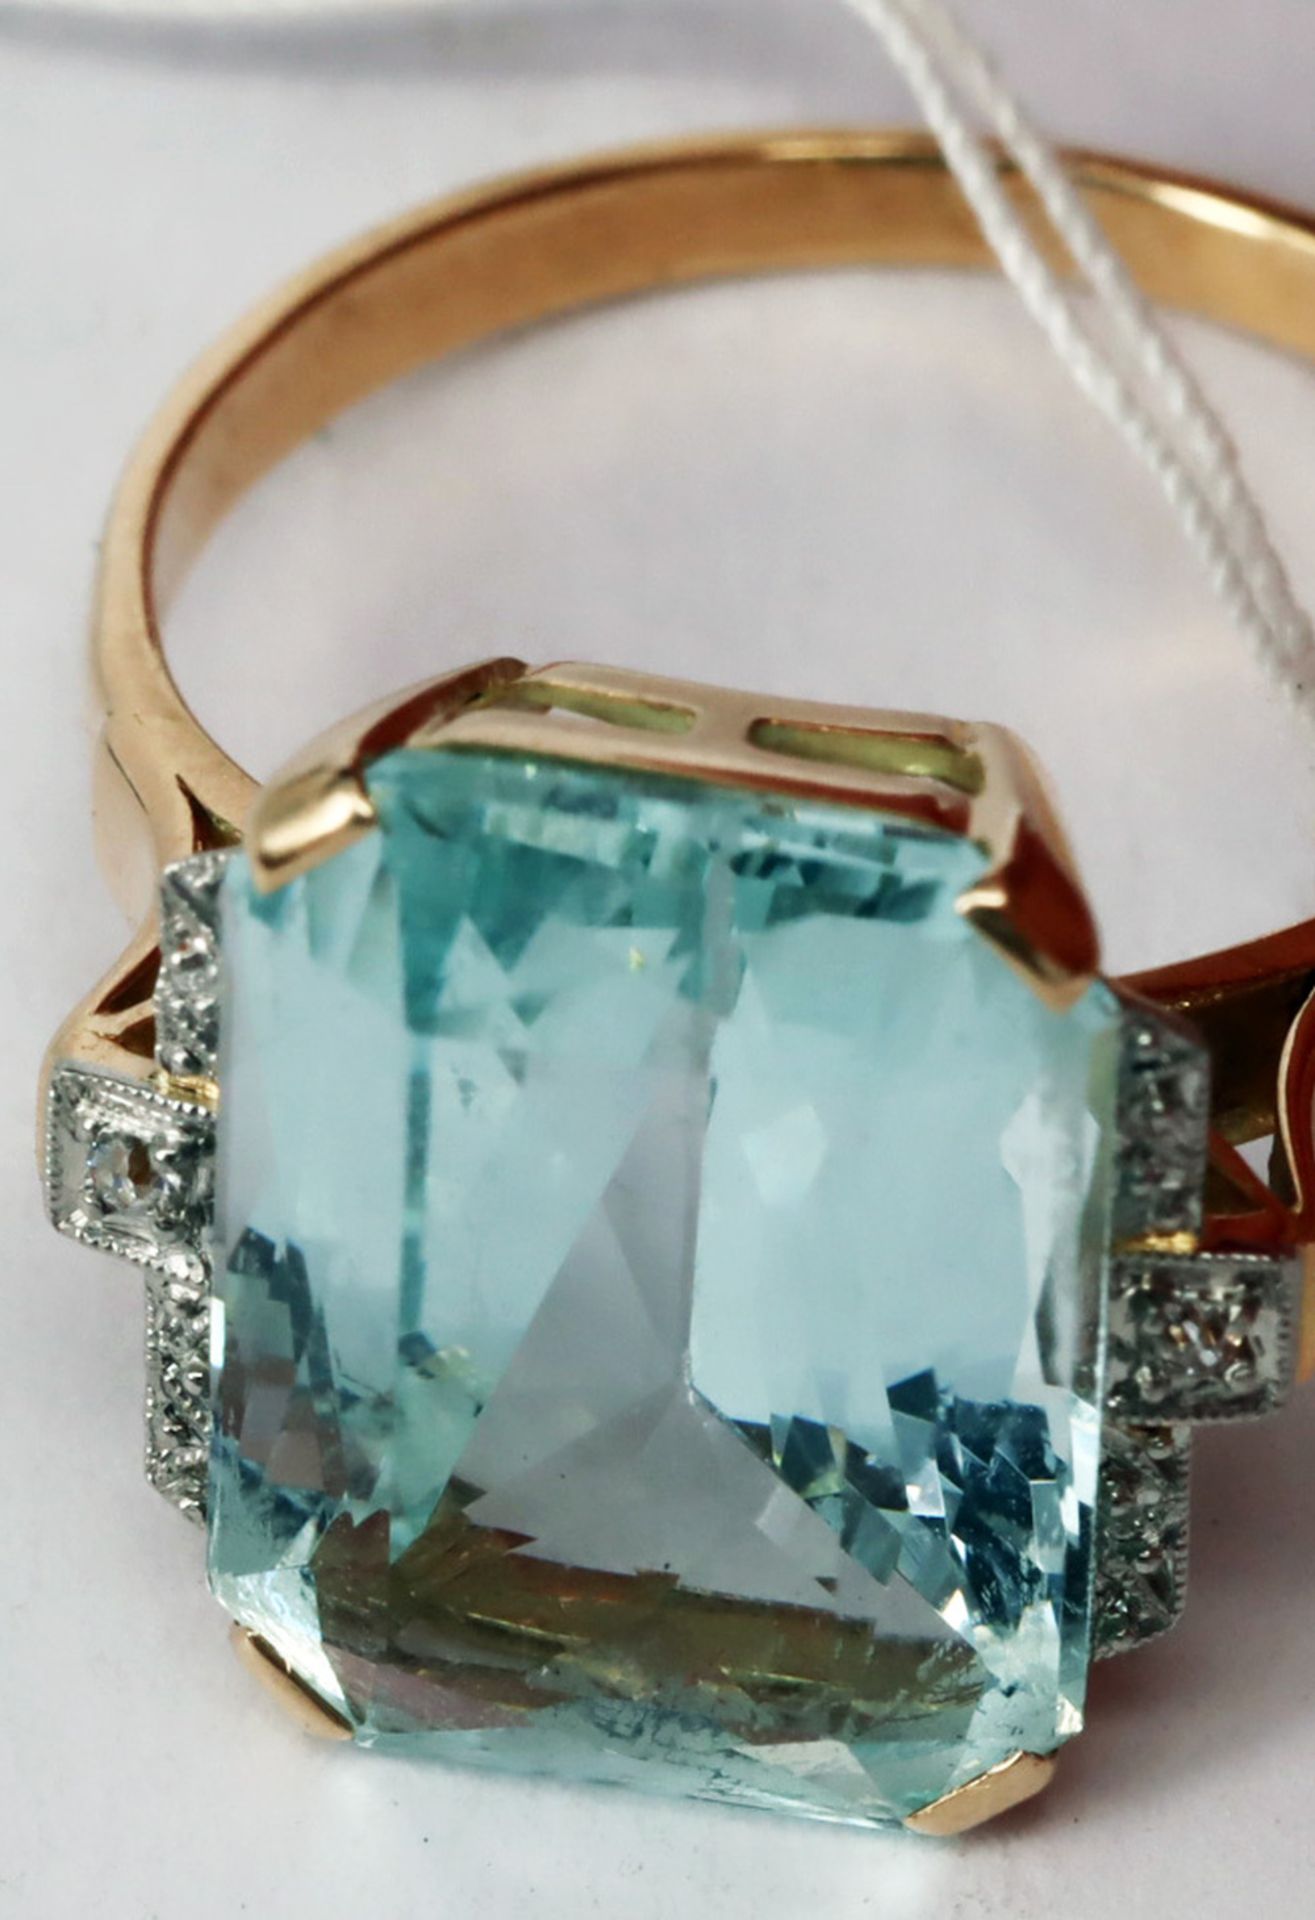 Ring, 585er GG, mit großem Aquamarin ca. 9 ct, seitlich mit Diamanten gefasst, Altersspuren, RG56 - Image 3 of 5